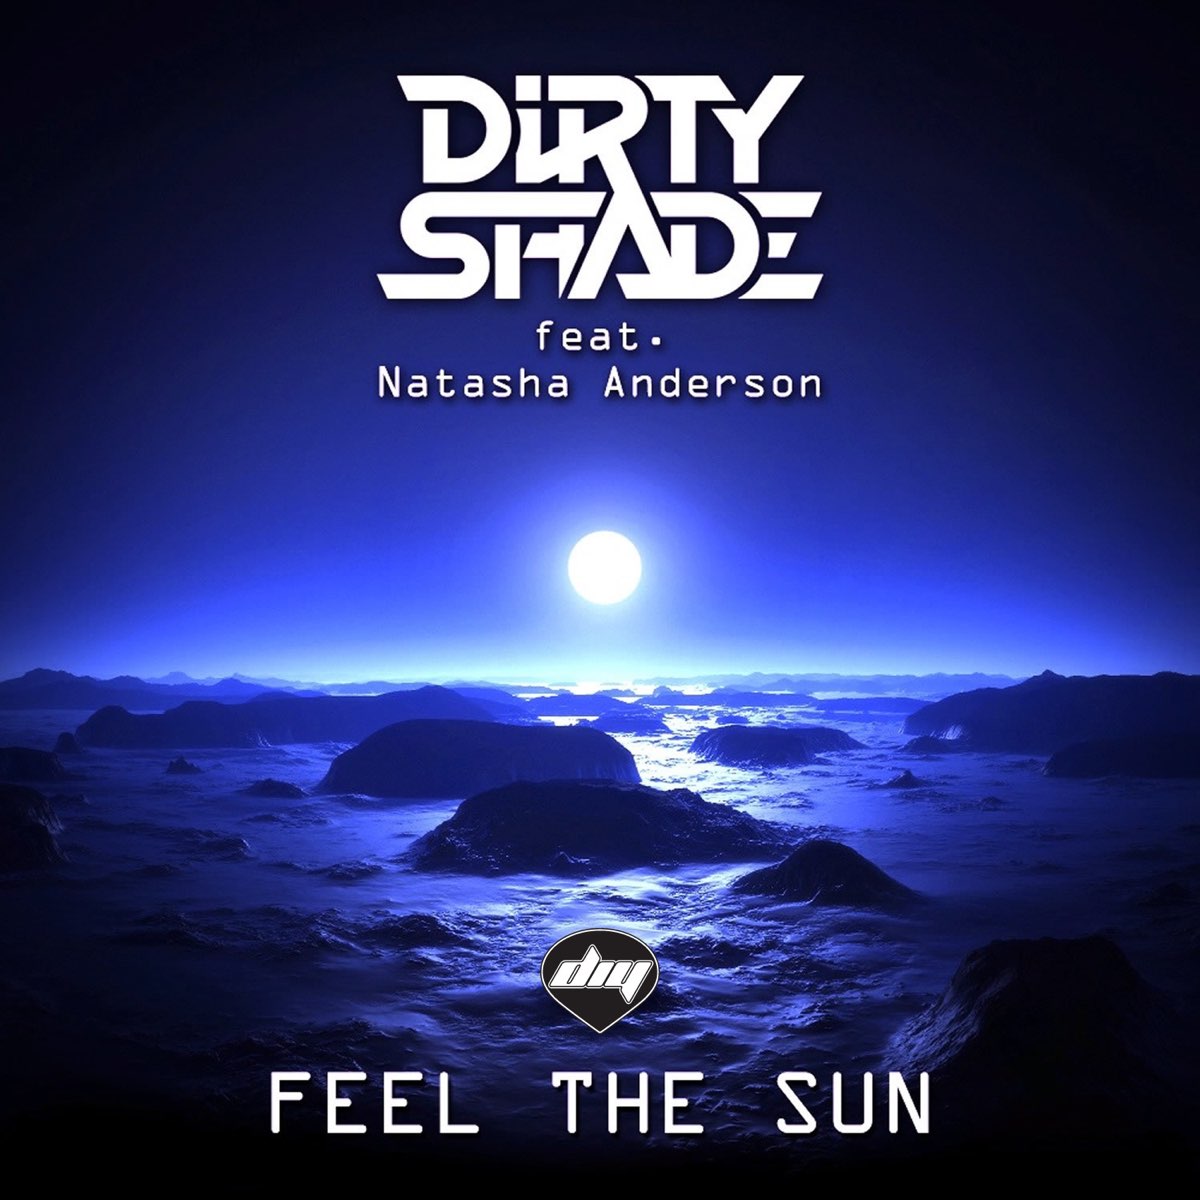 Natasha Anderson. Anderson Single line. Sun Natalia you unleashed. Shades mp3.